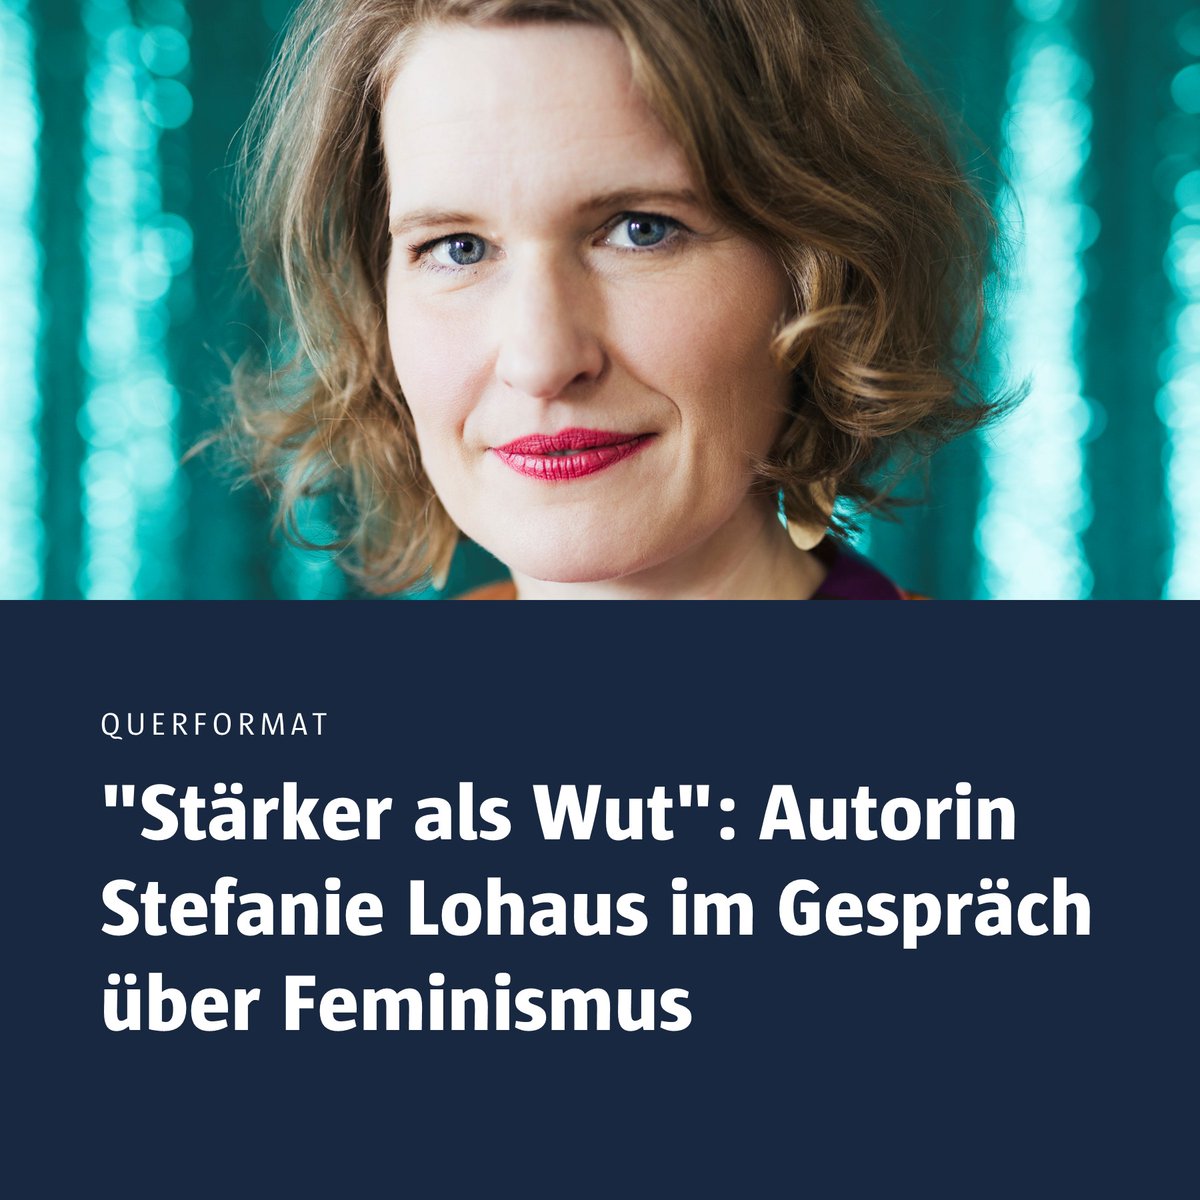 'Stärker als Wut': Autorin Stefanie Lohaus @slow_haus im Gespräch über #Feminismus: 08. Mai von 17:00-18:30 Uhr an der FH Potsdam. @suhrkamp➡️ fh-potsdam.de/aktuelles-medi…